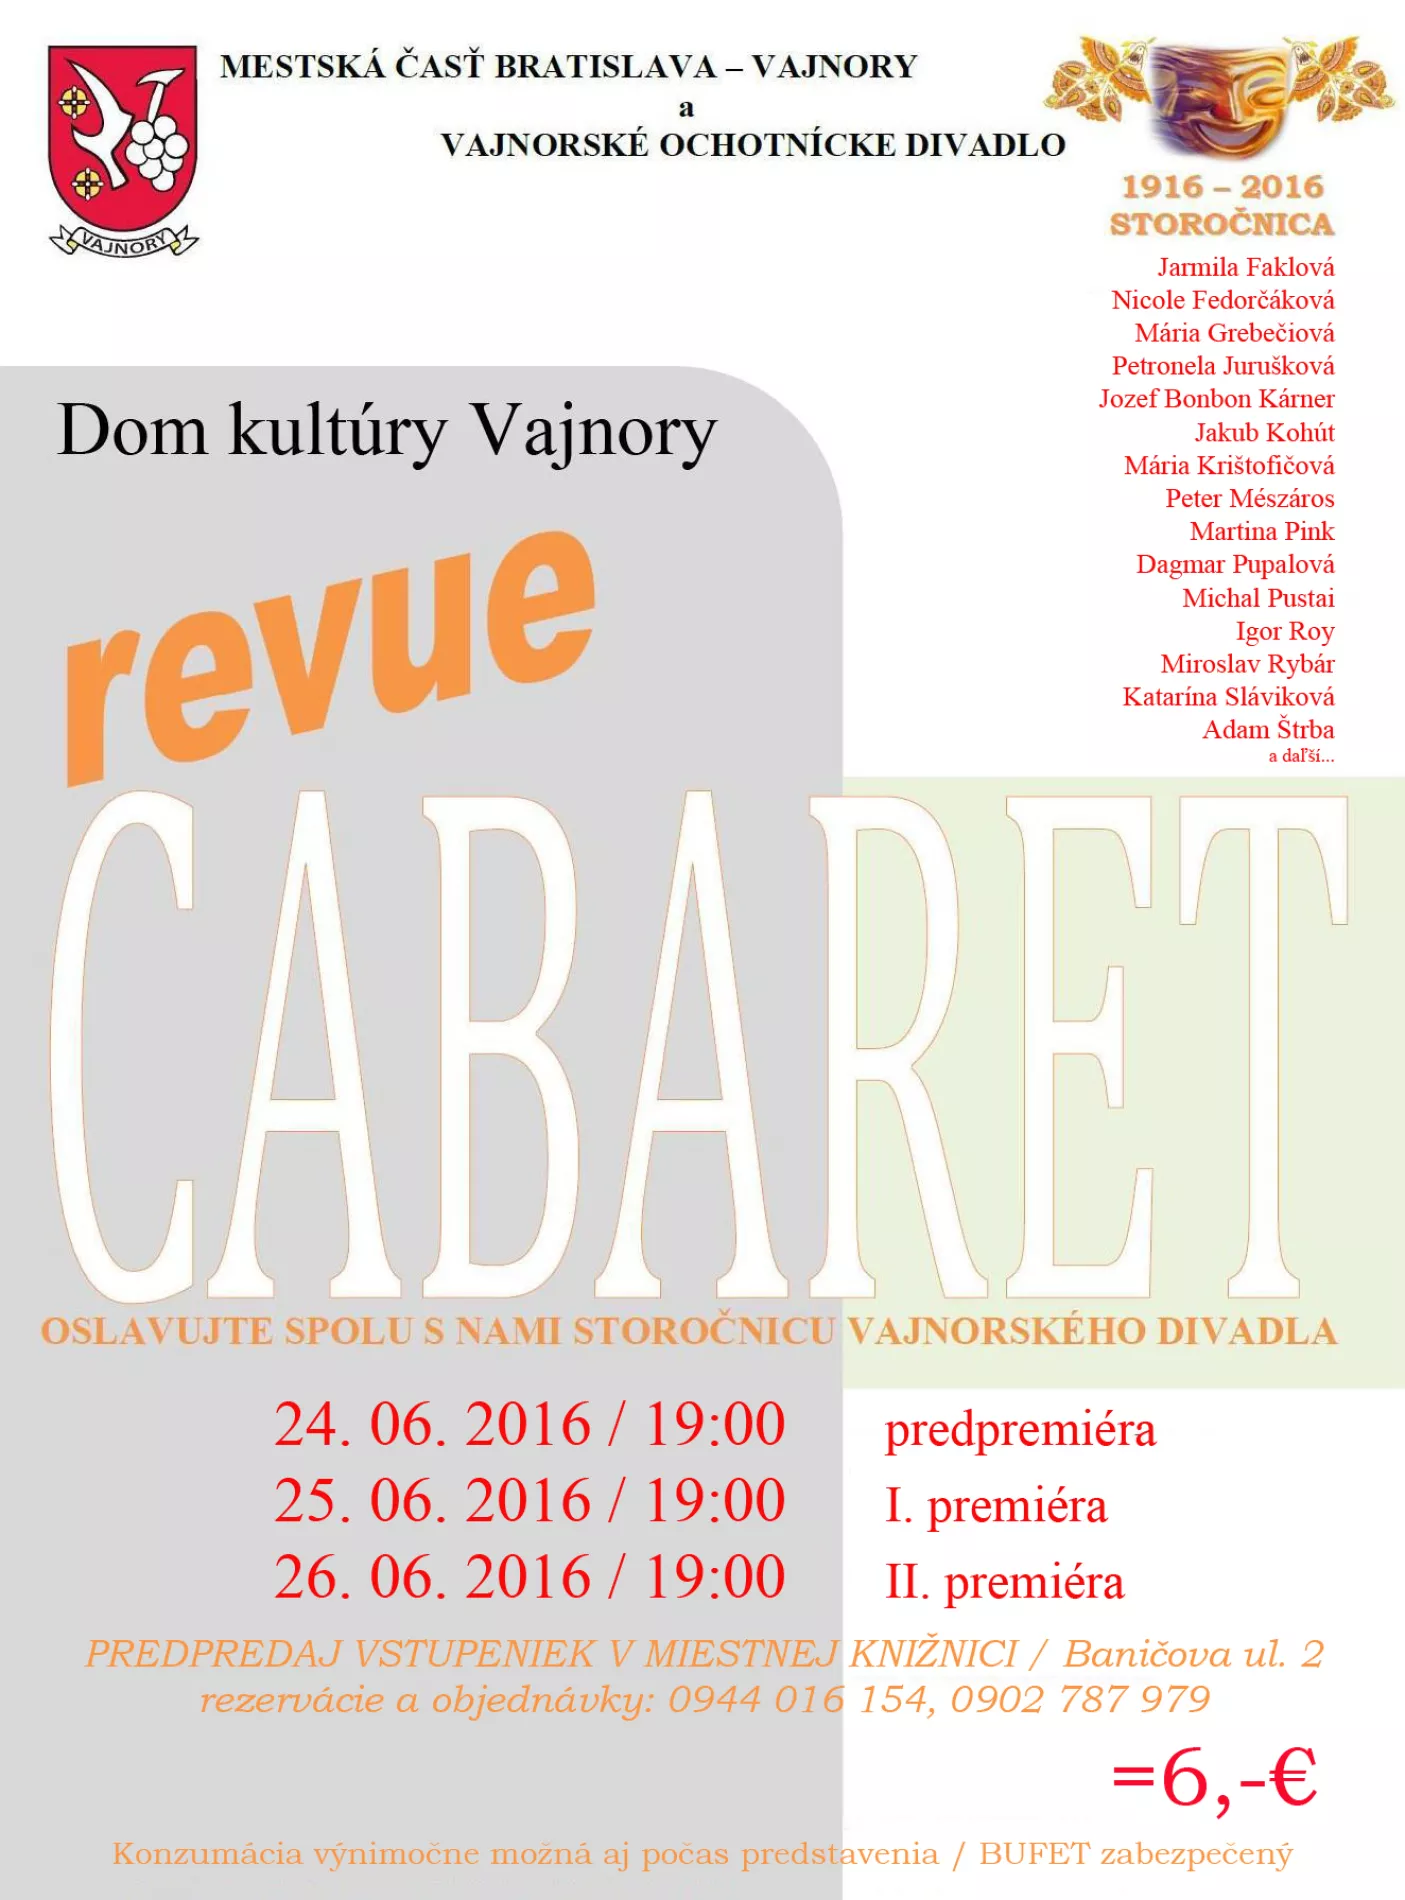 CABARET Revue 24.,25.,26.6.2016